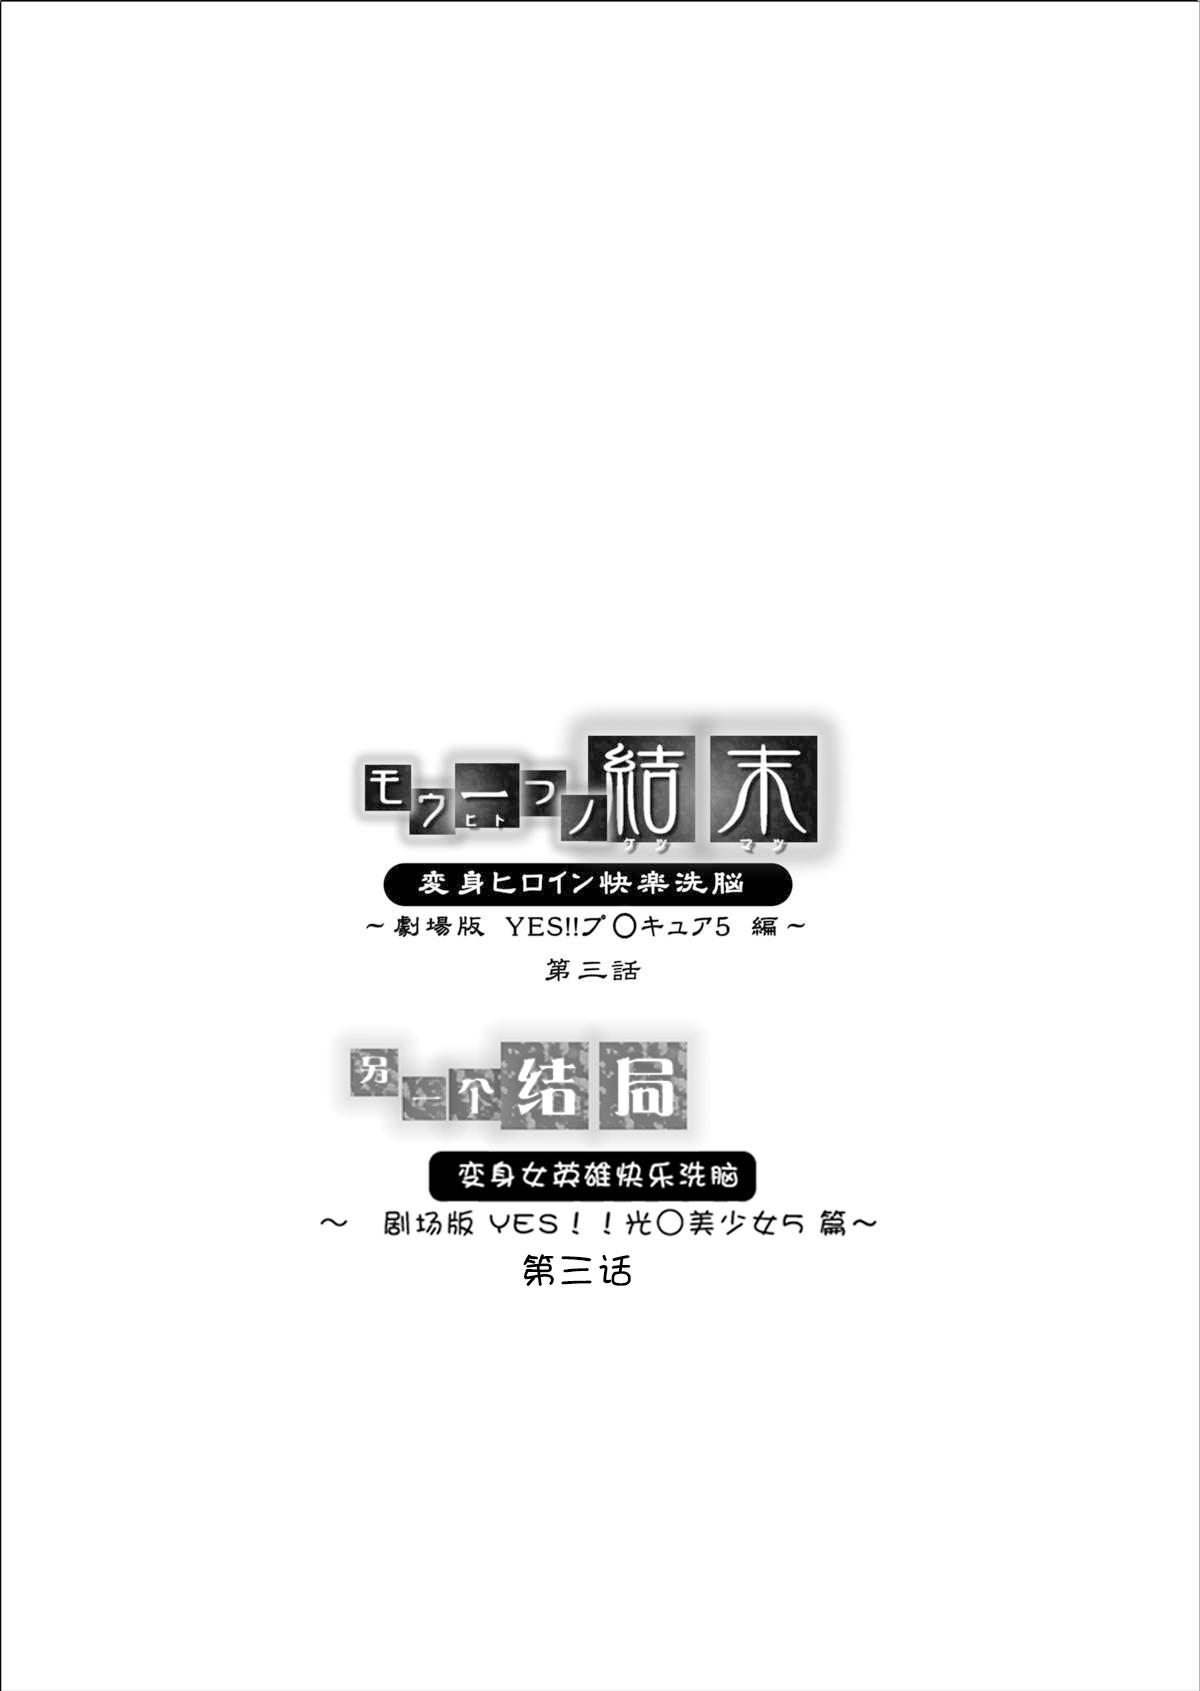 Rubbing [MACXE'S (monmon)] Mou Hitotsu no Ketsumatsu ~Henshin Heroine Kairaku Sennou Yes!! Precure 5 Hen~ 另一个结局 变身女英雄快乐洗脑 yes!! 光之美少女5篇 第三话 (Yes! PreCure 5) [Chinese] [LLQ个人汉化] - Yes precure 5 3some - Picture 2